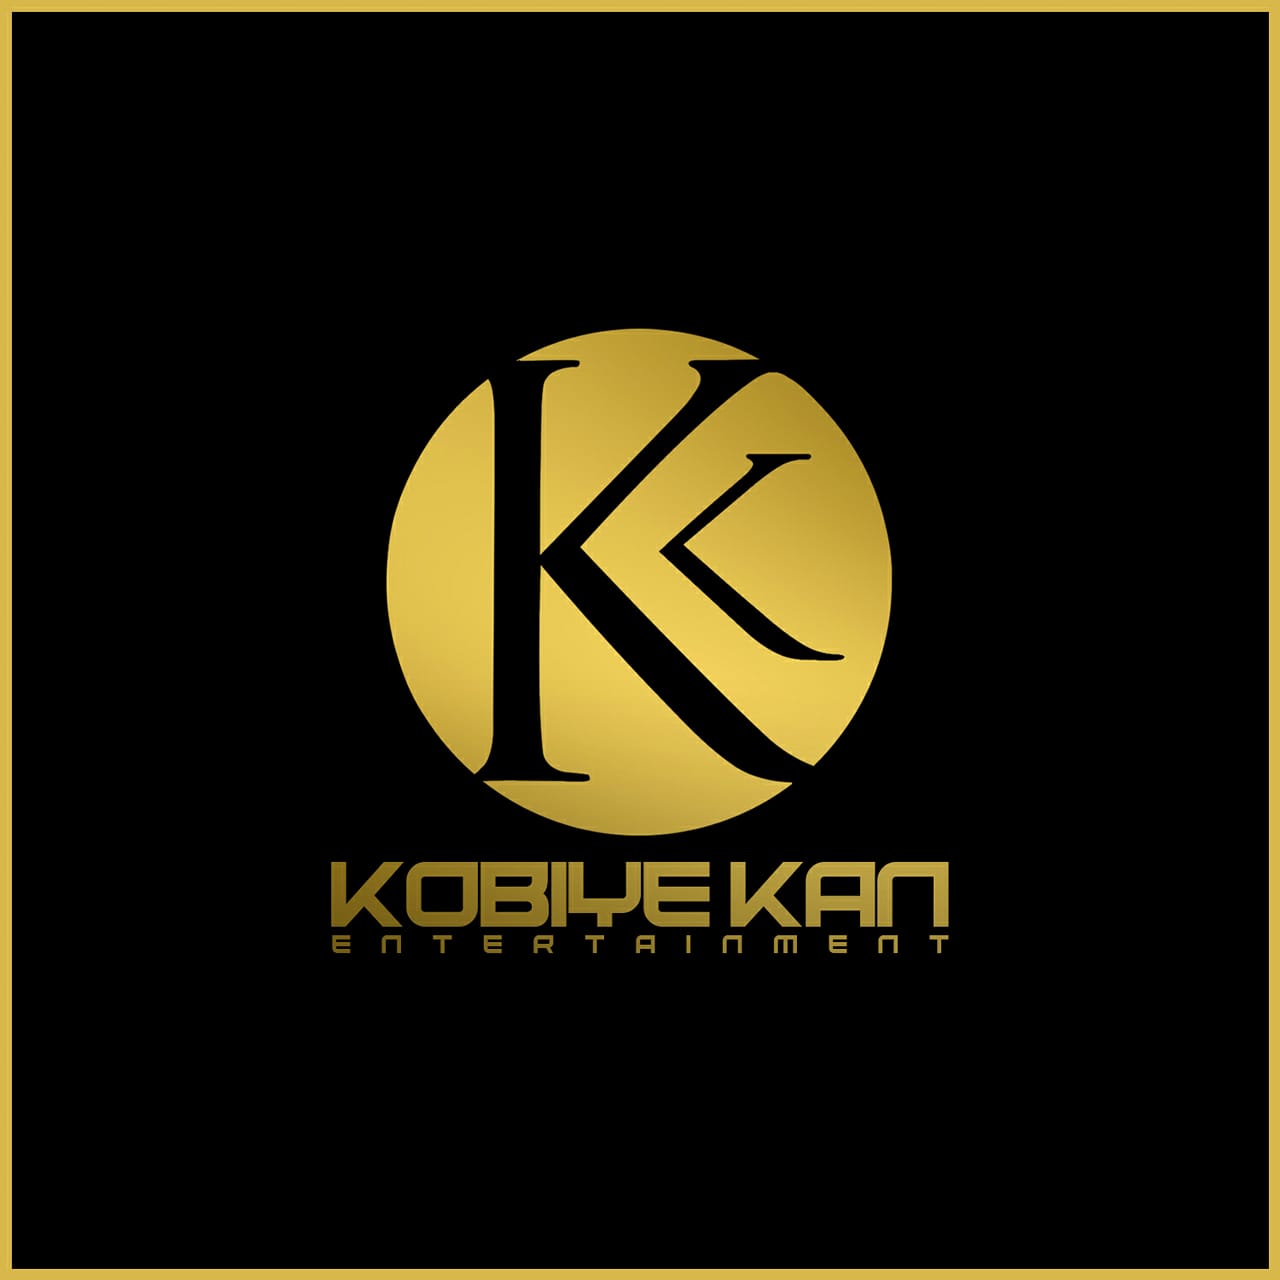 Kobiyekan Entertainment